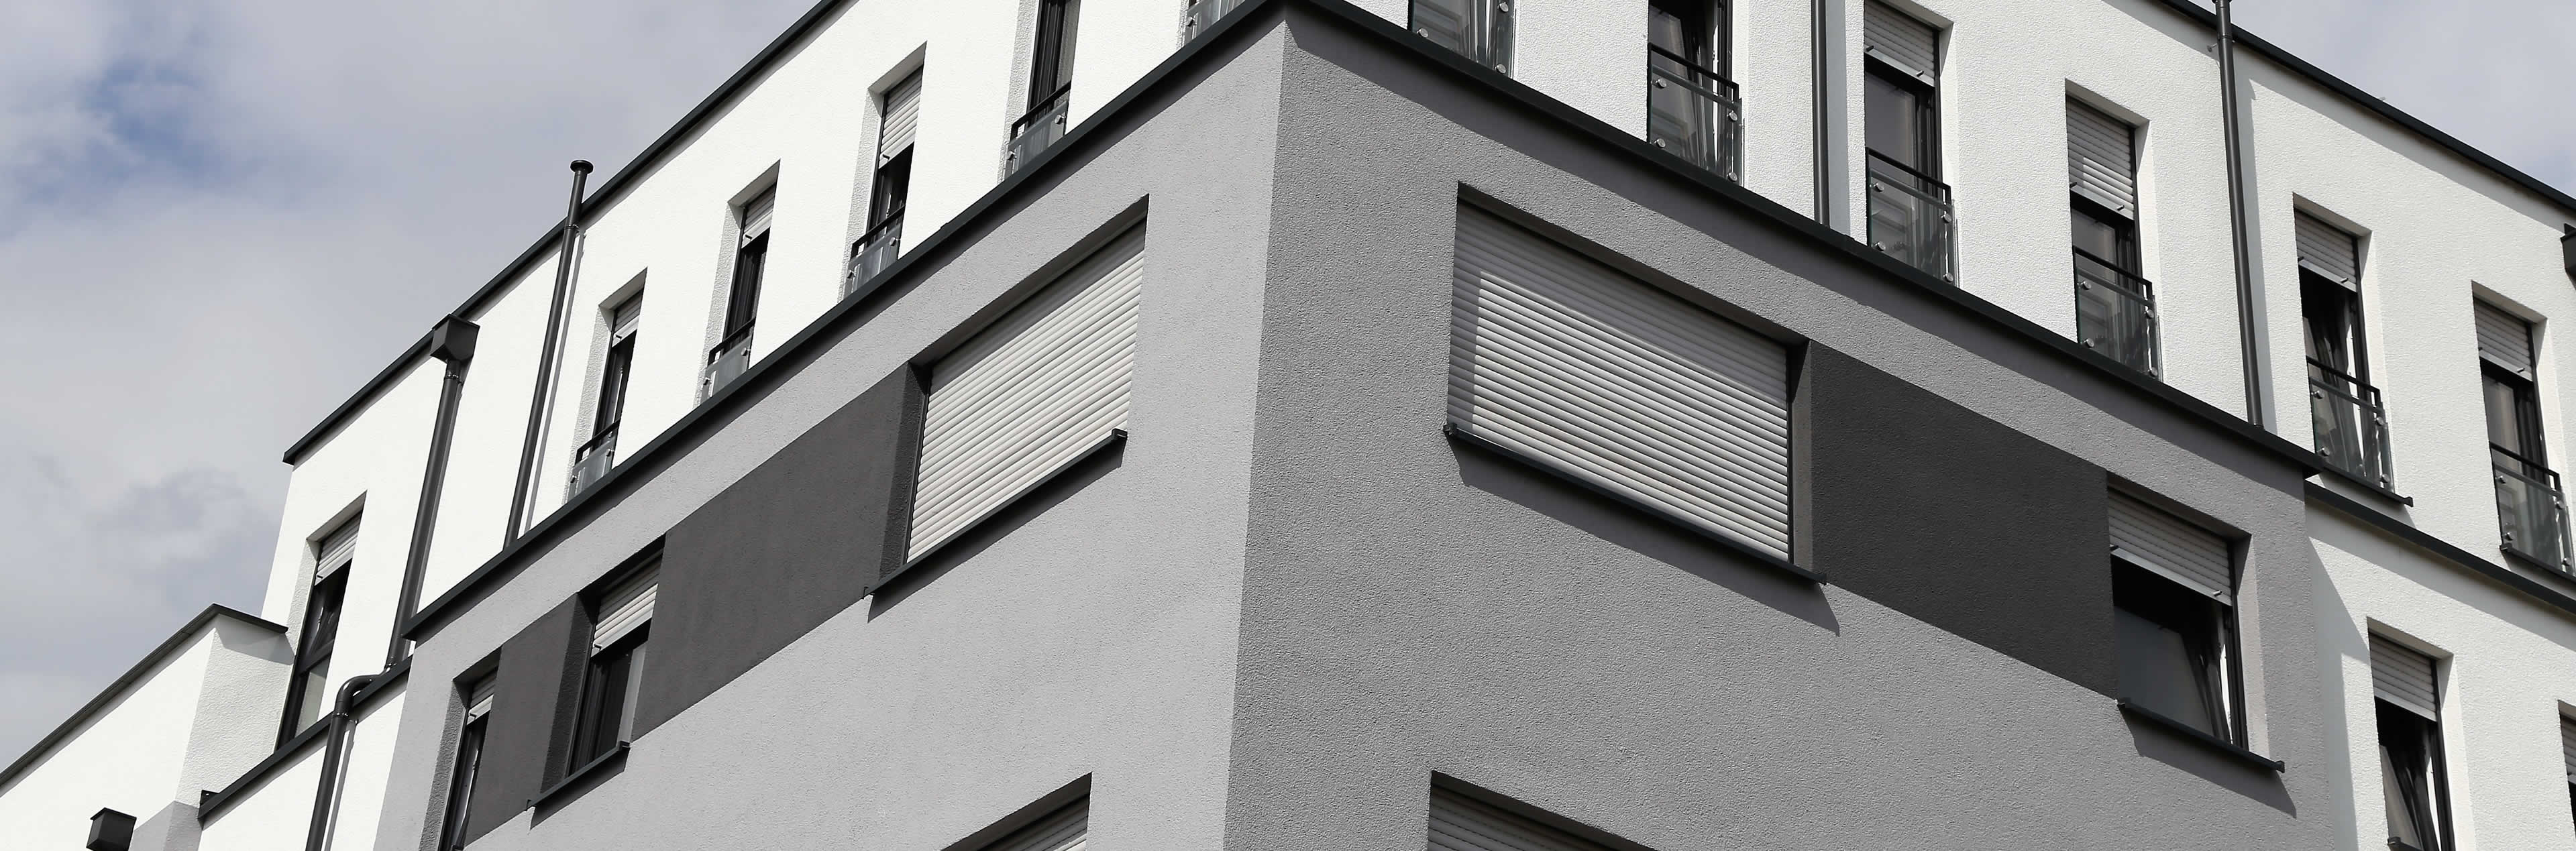 FTR Fensterbauer mit Erfahrung rund um Fenster und Türenbau in Deutschland